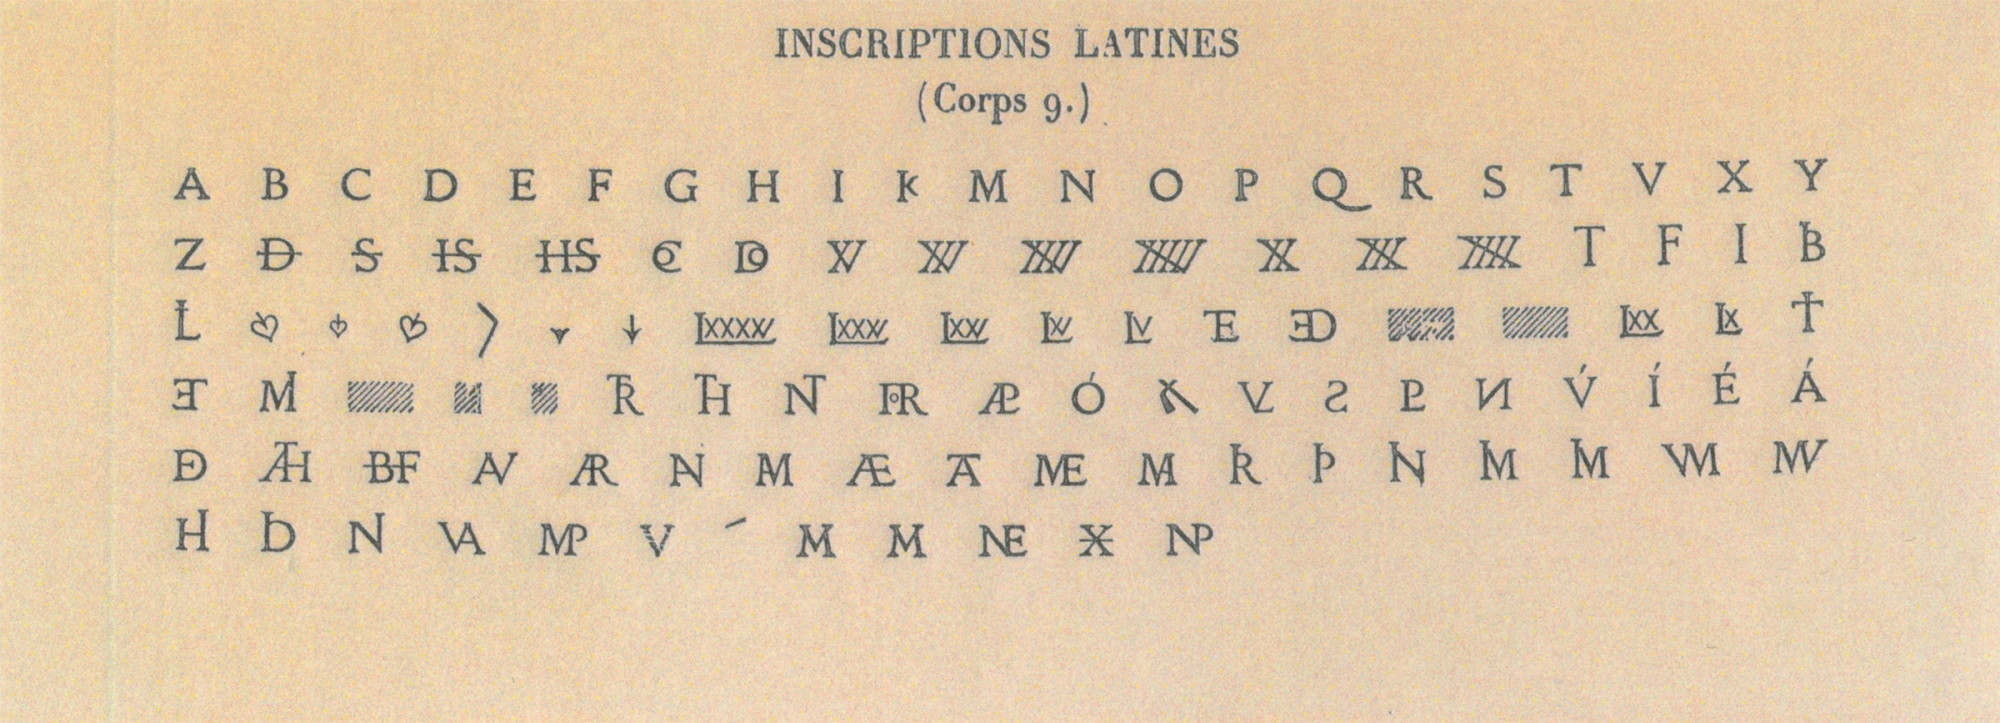 Latin épigraphique, avec cinq frustes et un V majuscule abîmé, corps 9, 1854